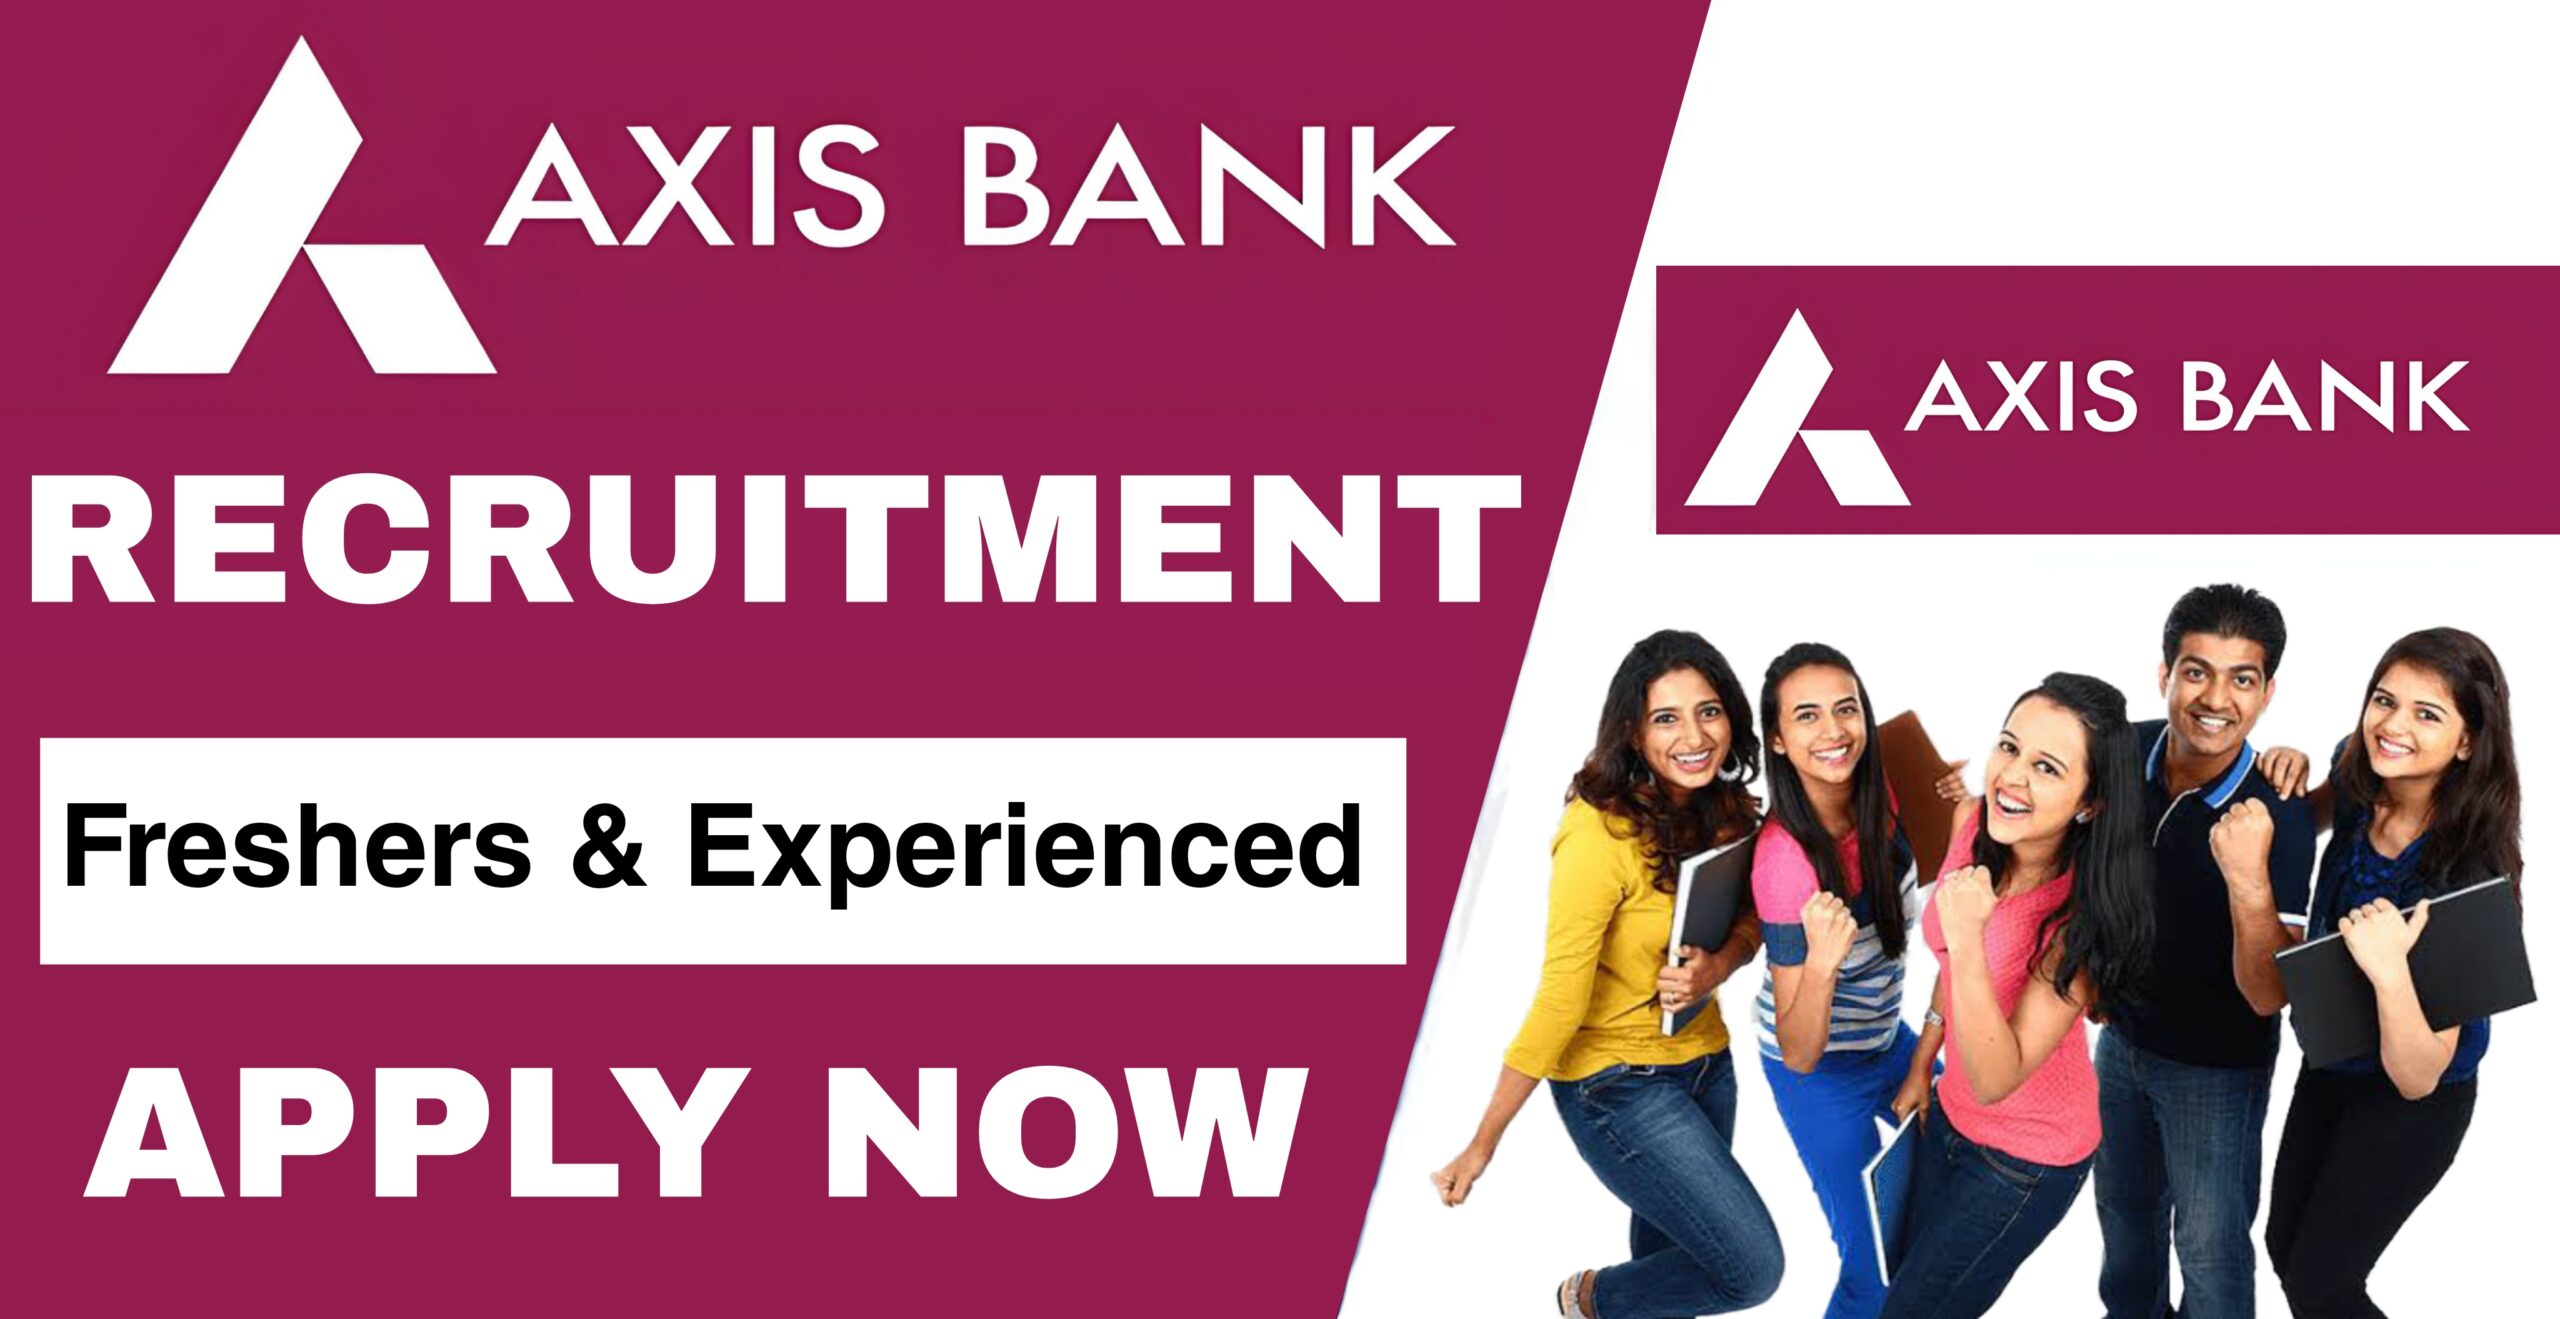 Axis Bank is hiring